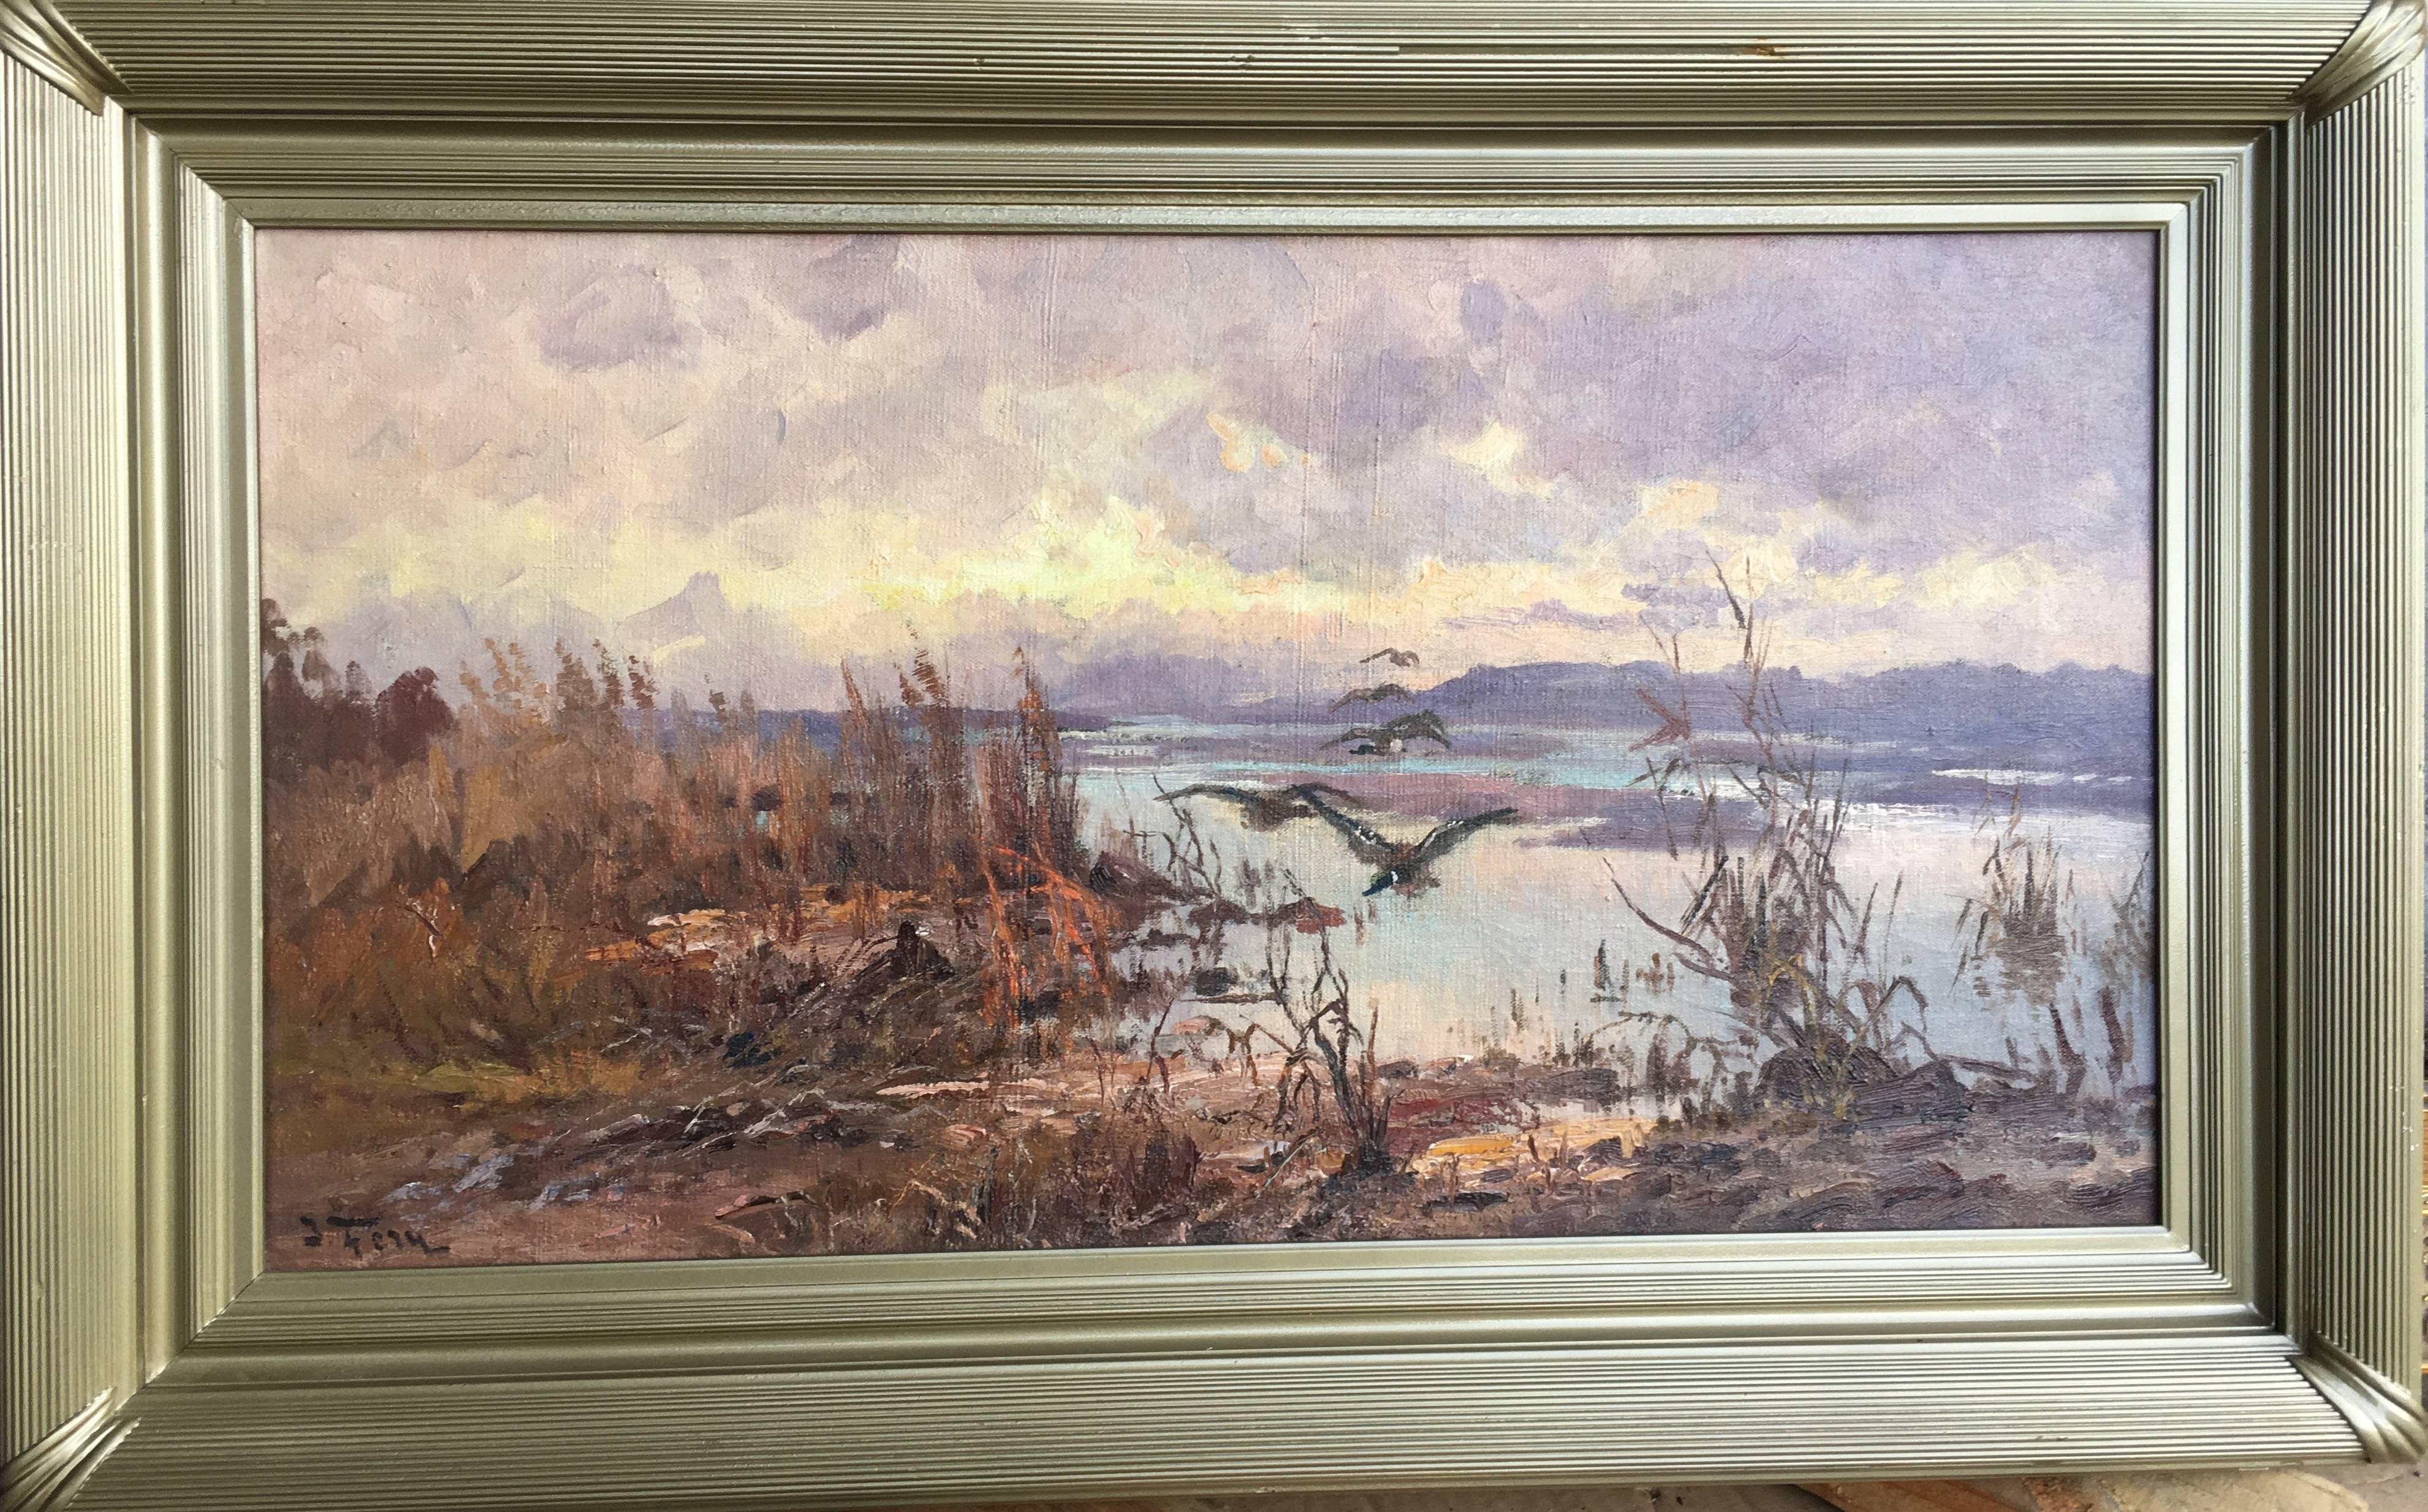 Ducks over the Marsh - Gray Landscape Painting by John Fery